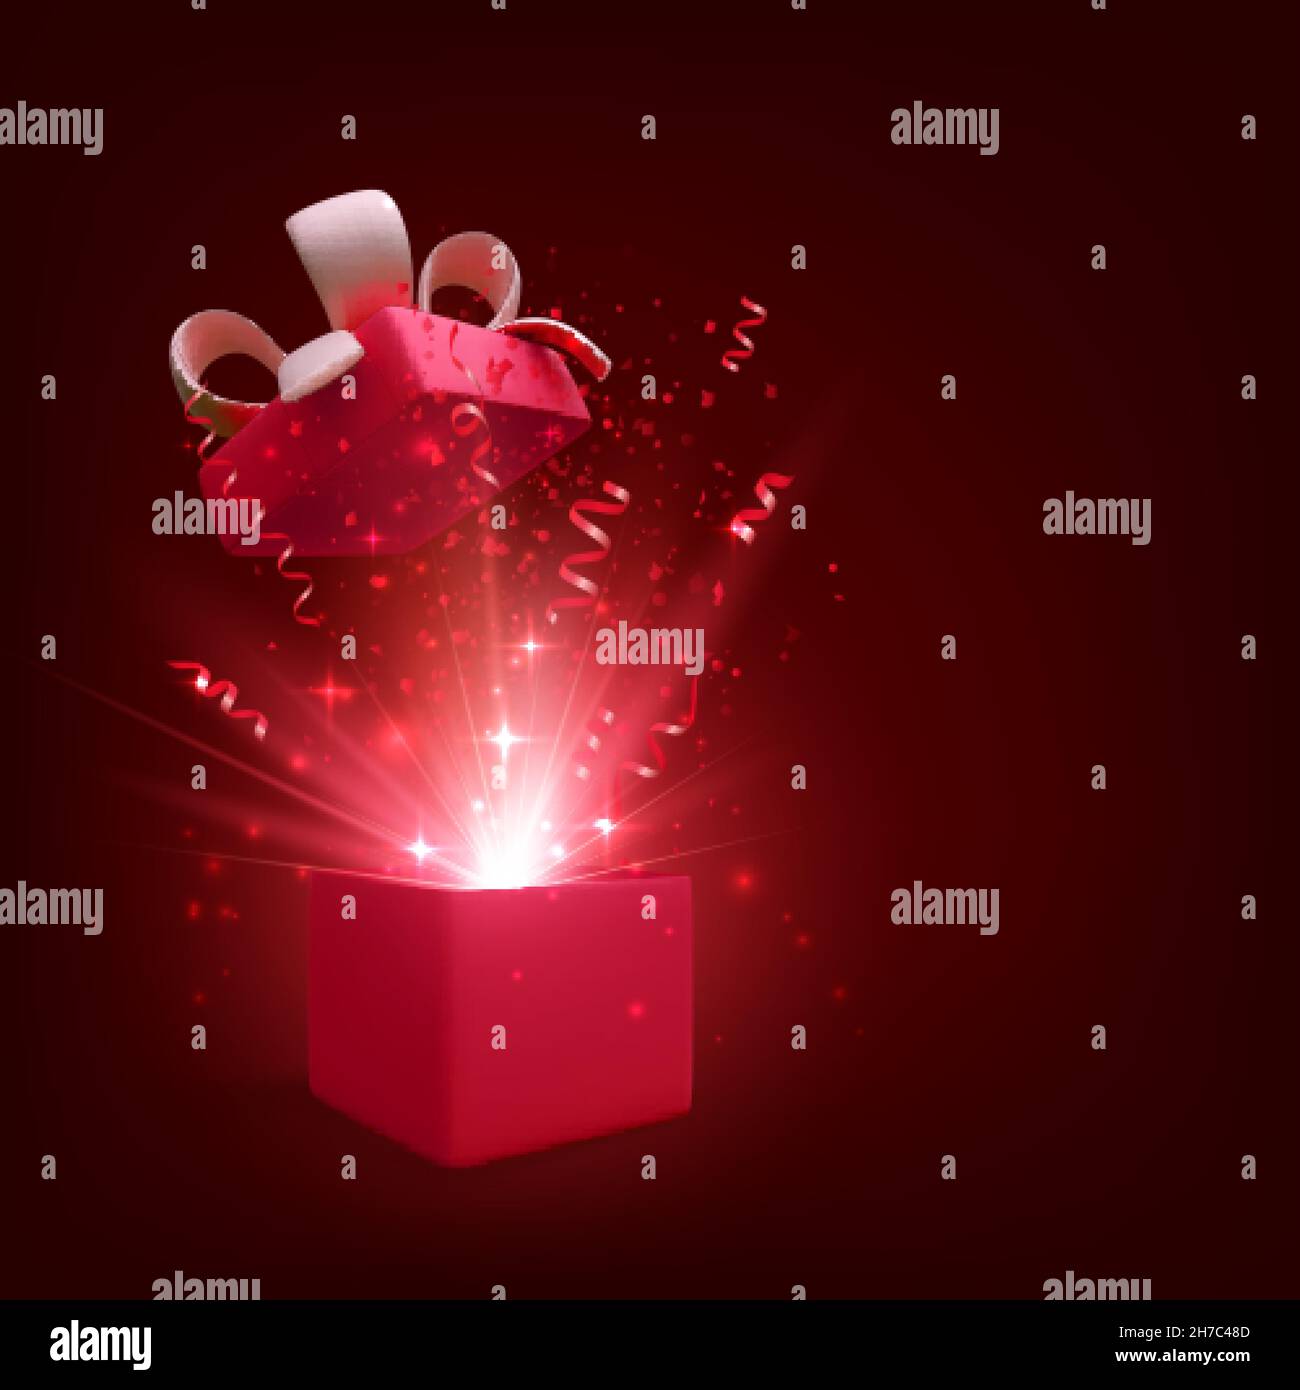 Offenes Geschenk mit Feuerwerk und Glitzer. Geschenk Box Dekoration Design-Element. Weihnachtsbanner mit roter offener Box. Vektorgrafik Stock Vektor